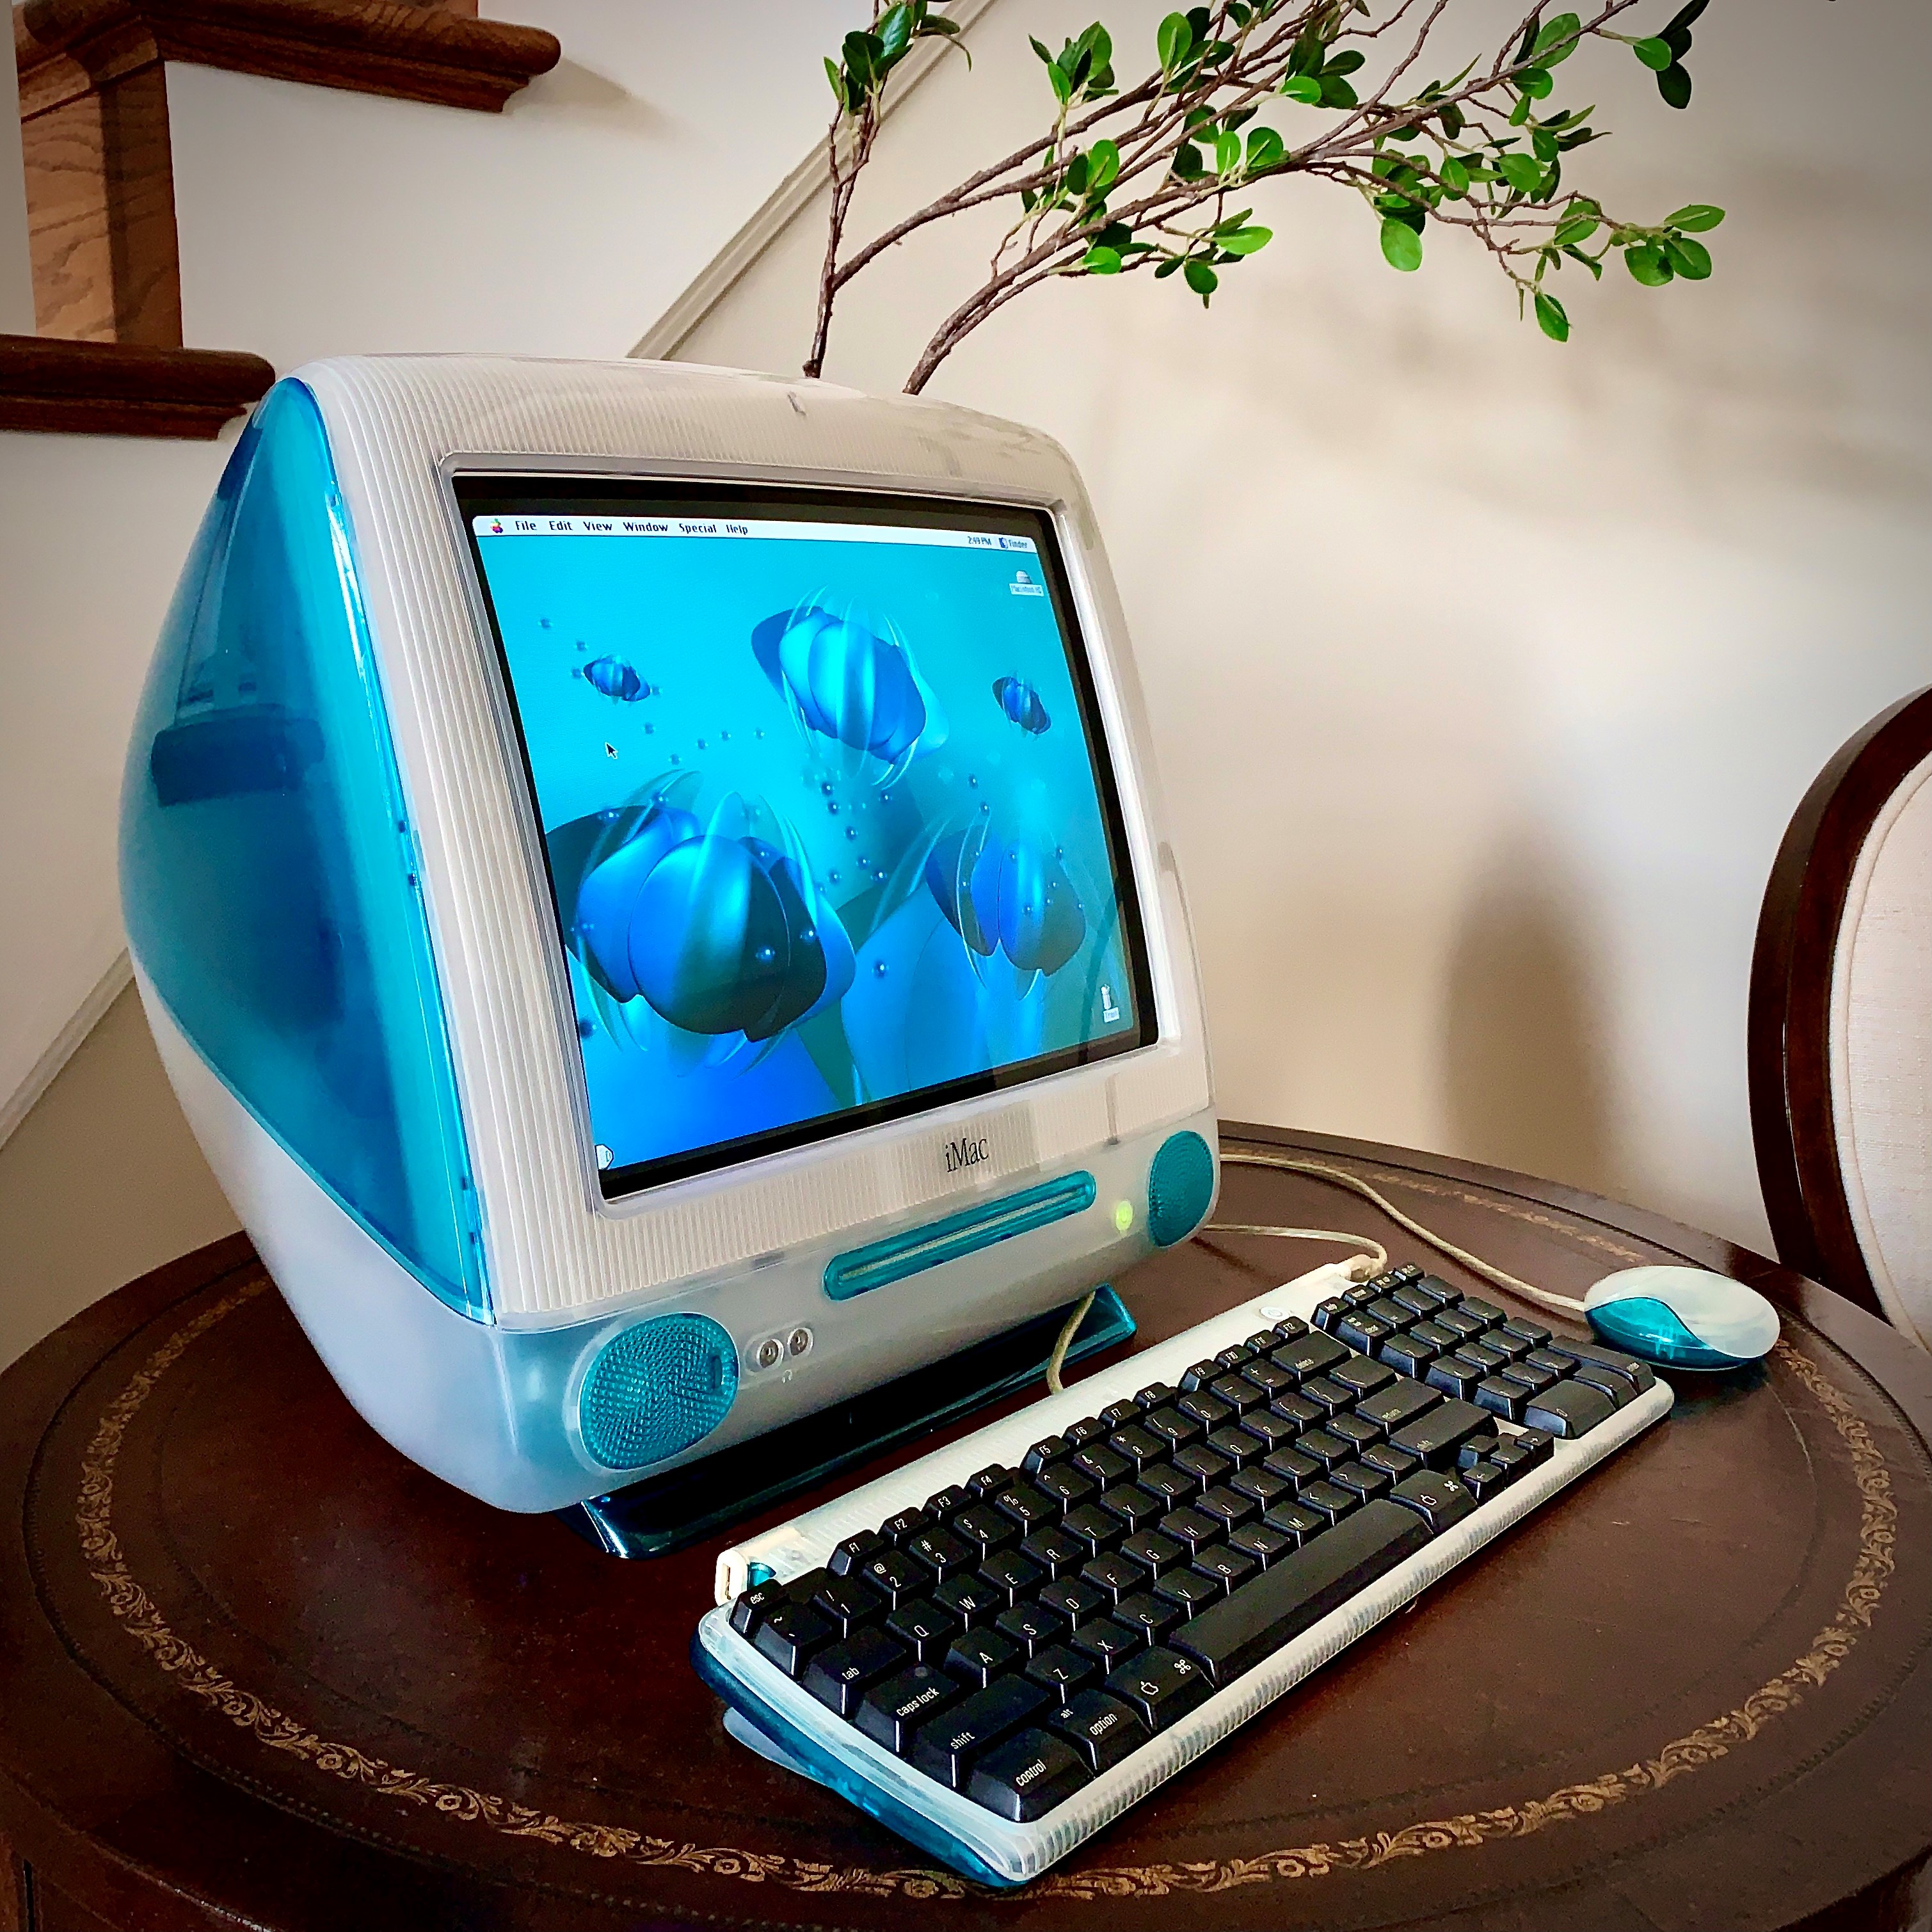 Apple iMac là gì? Ưu, nhược điểm và có nên mua iMac để sử dụng > Máy tính iMac G3